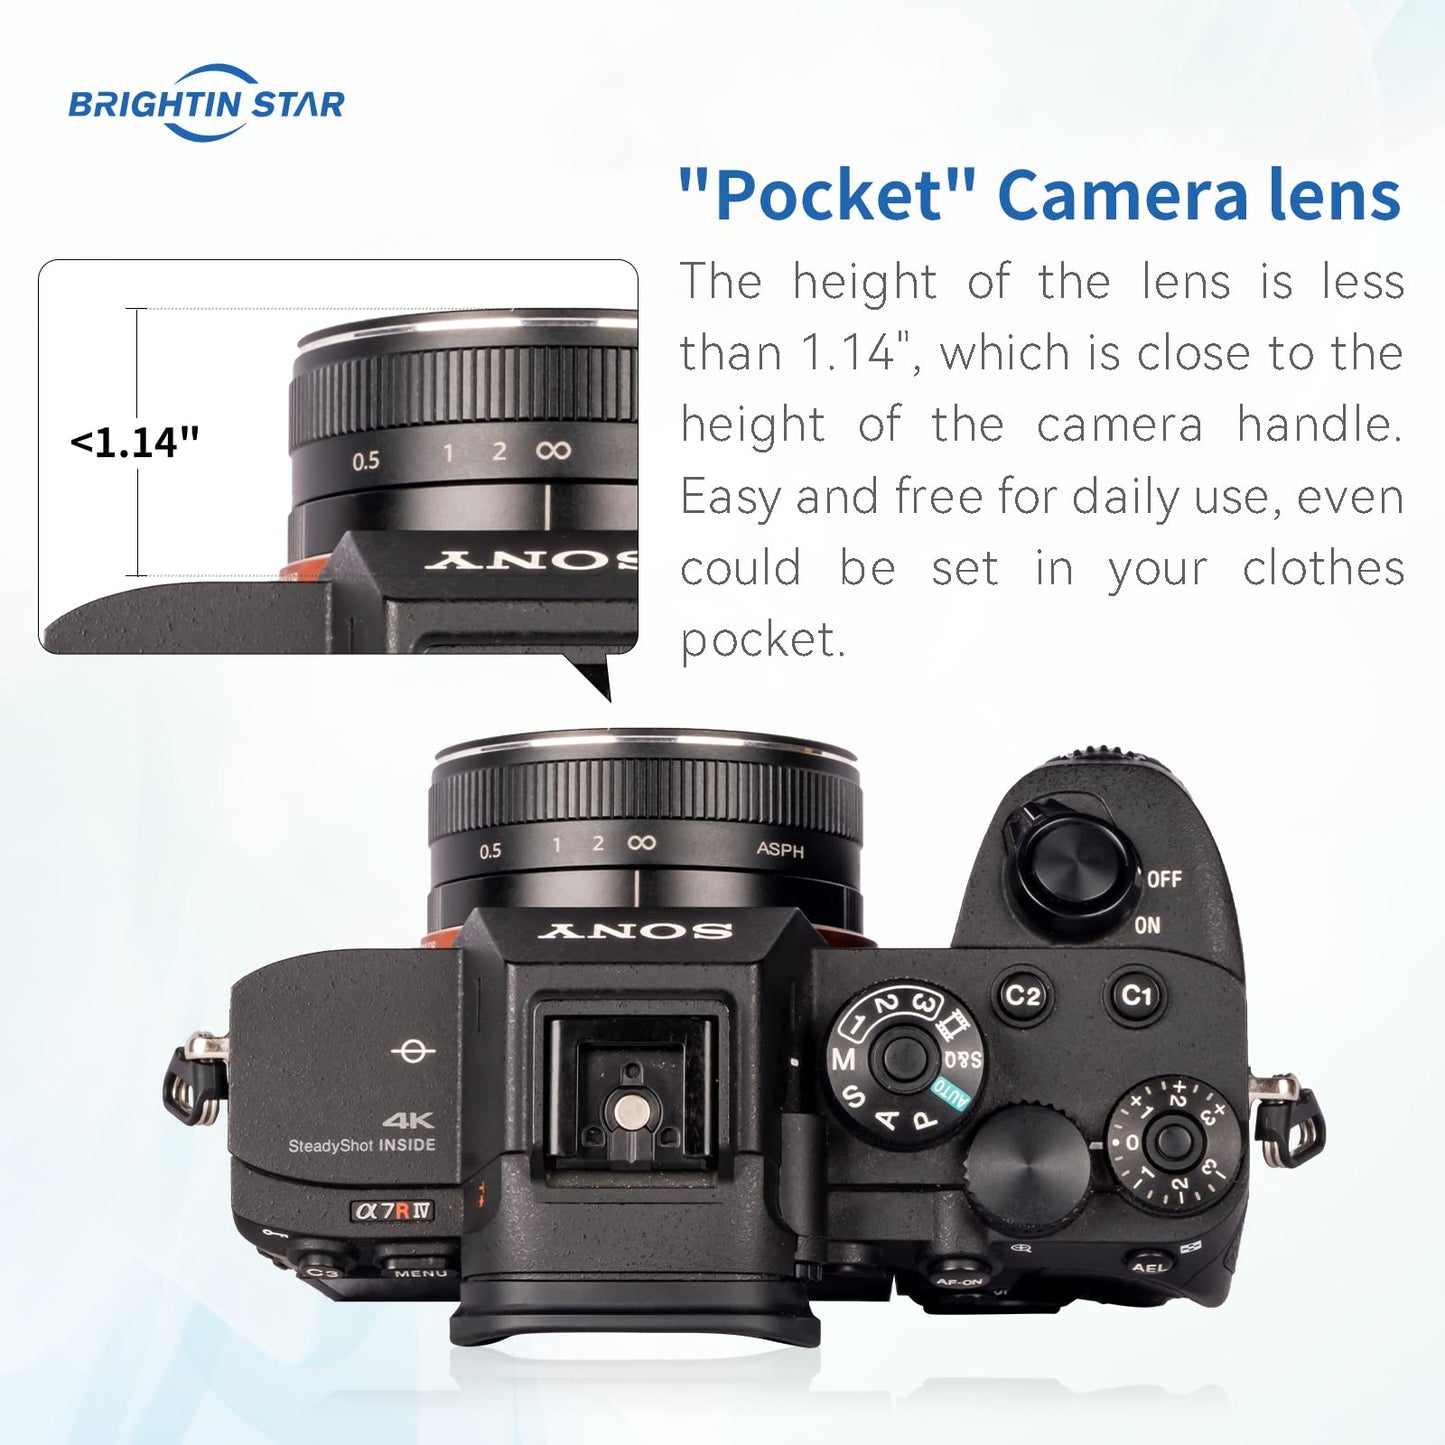 23mm F5.6 Full Frame Manual Focus Prime Lens for Sony E-Mount